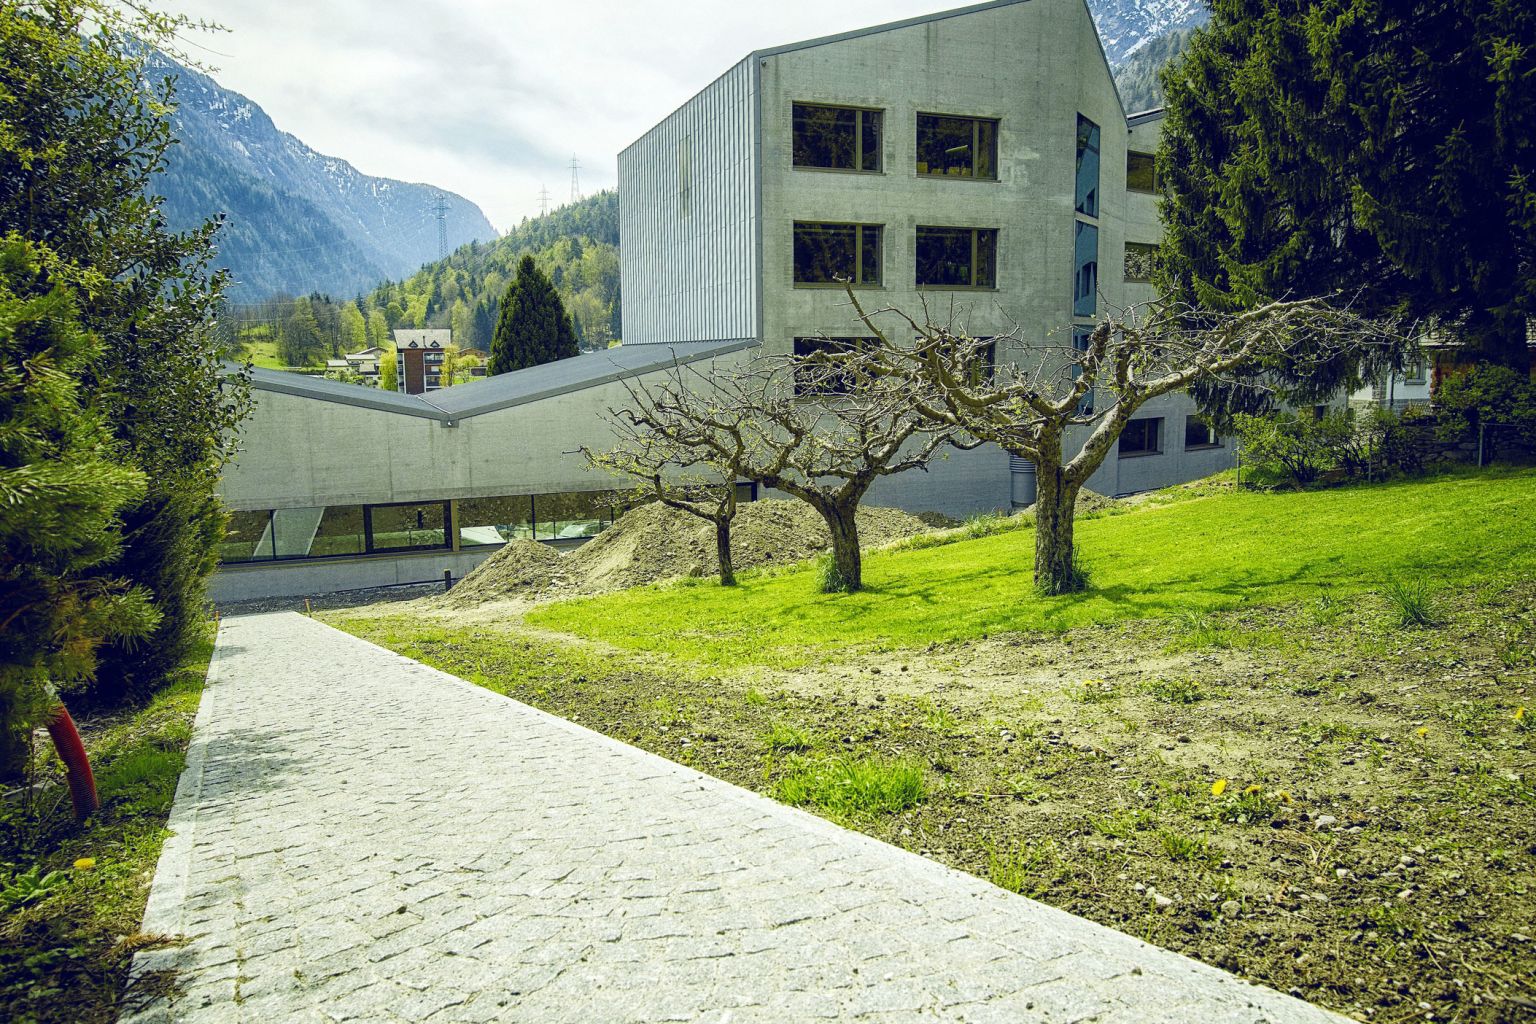 School in Salvan, architecture